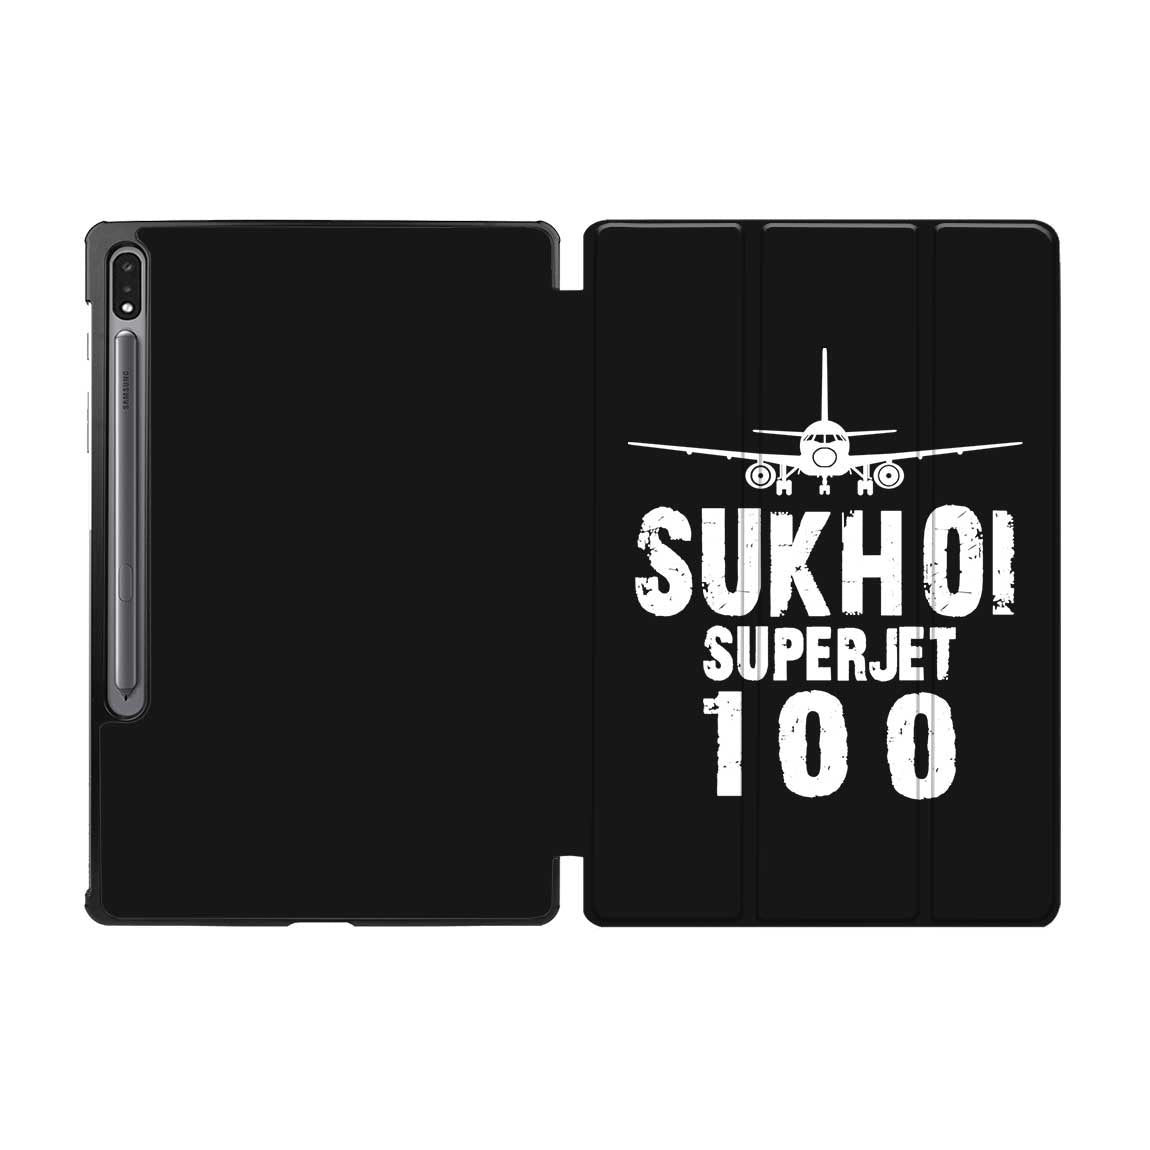 Sukhoi Superjet 100 & Plane Designed Samsung Tablet Cases